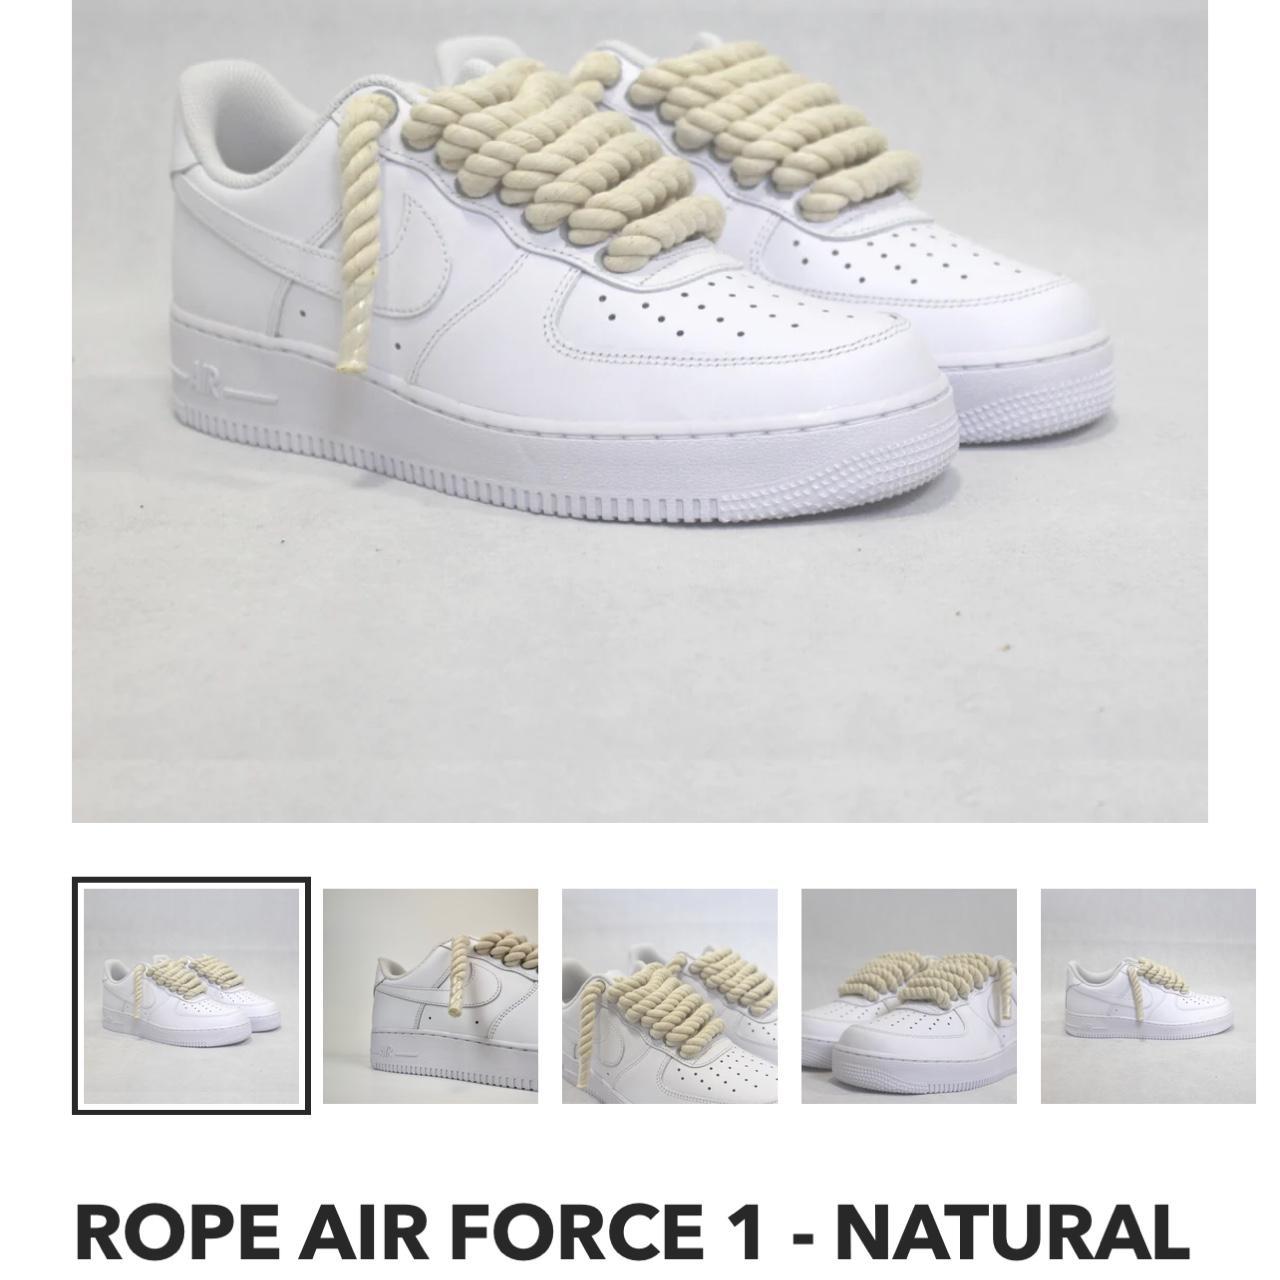 Rope Air Force 1 - Natural